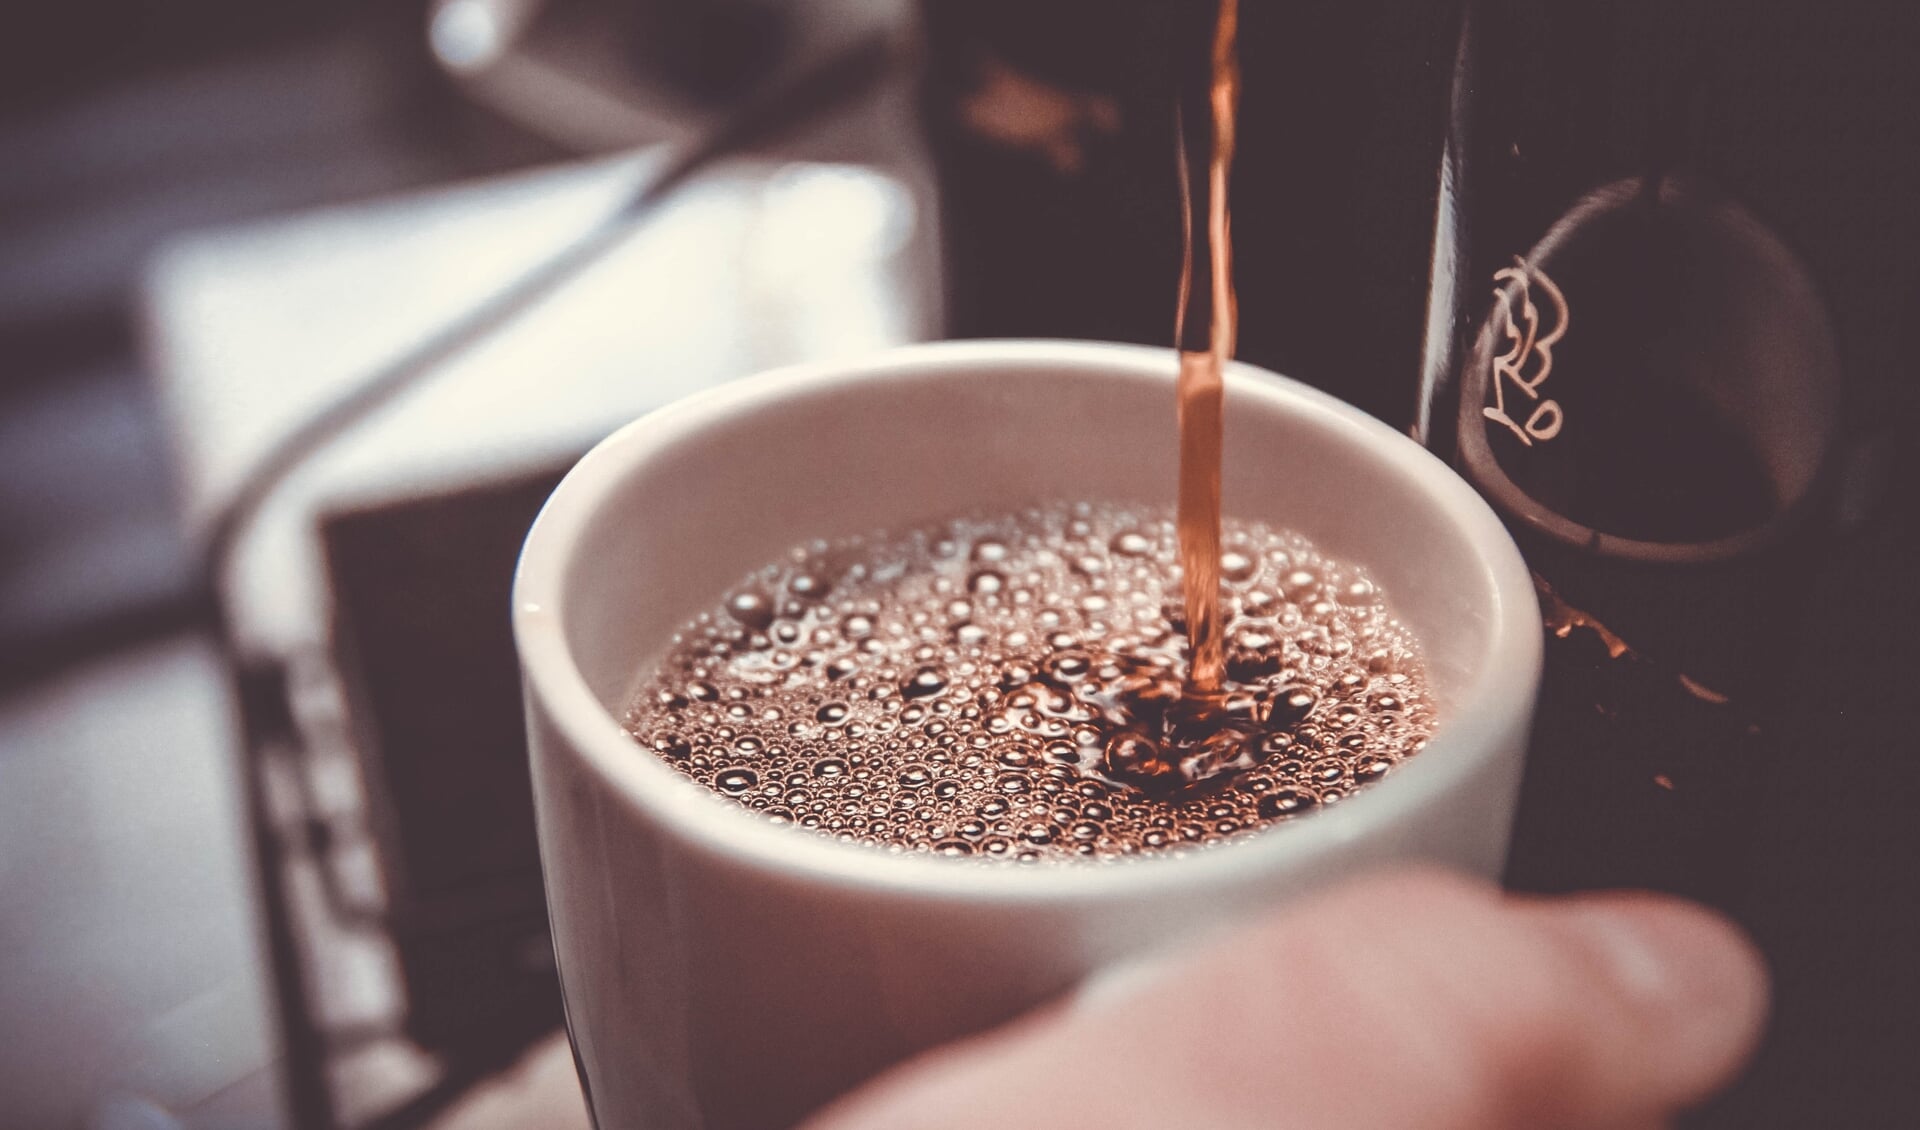 Kom gezellig een kopje koffie drinken in de Cuperstraat 9 Bemmel elke eeste maandag van de maand. (foto: John Schnobrich/Unsplash)